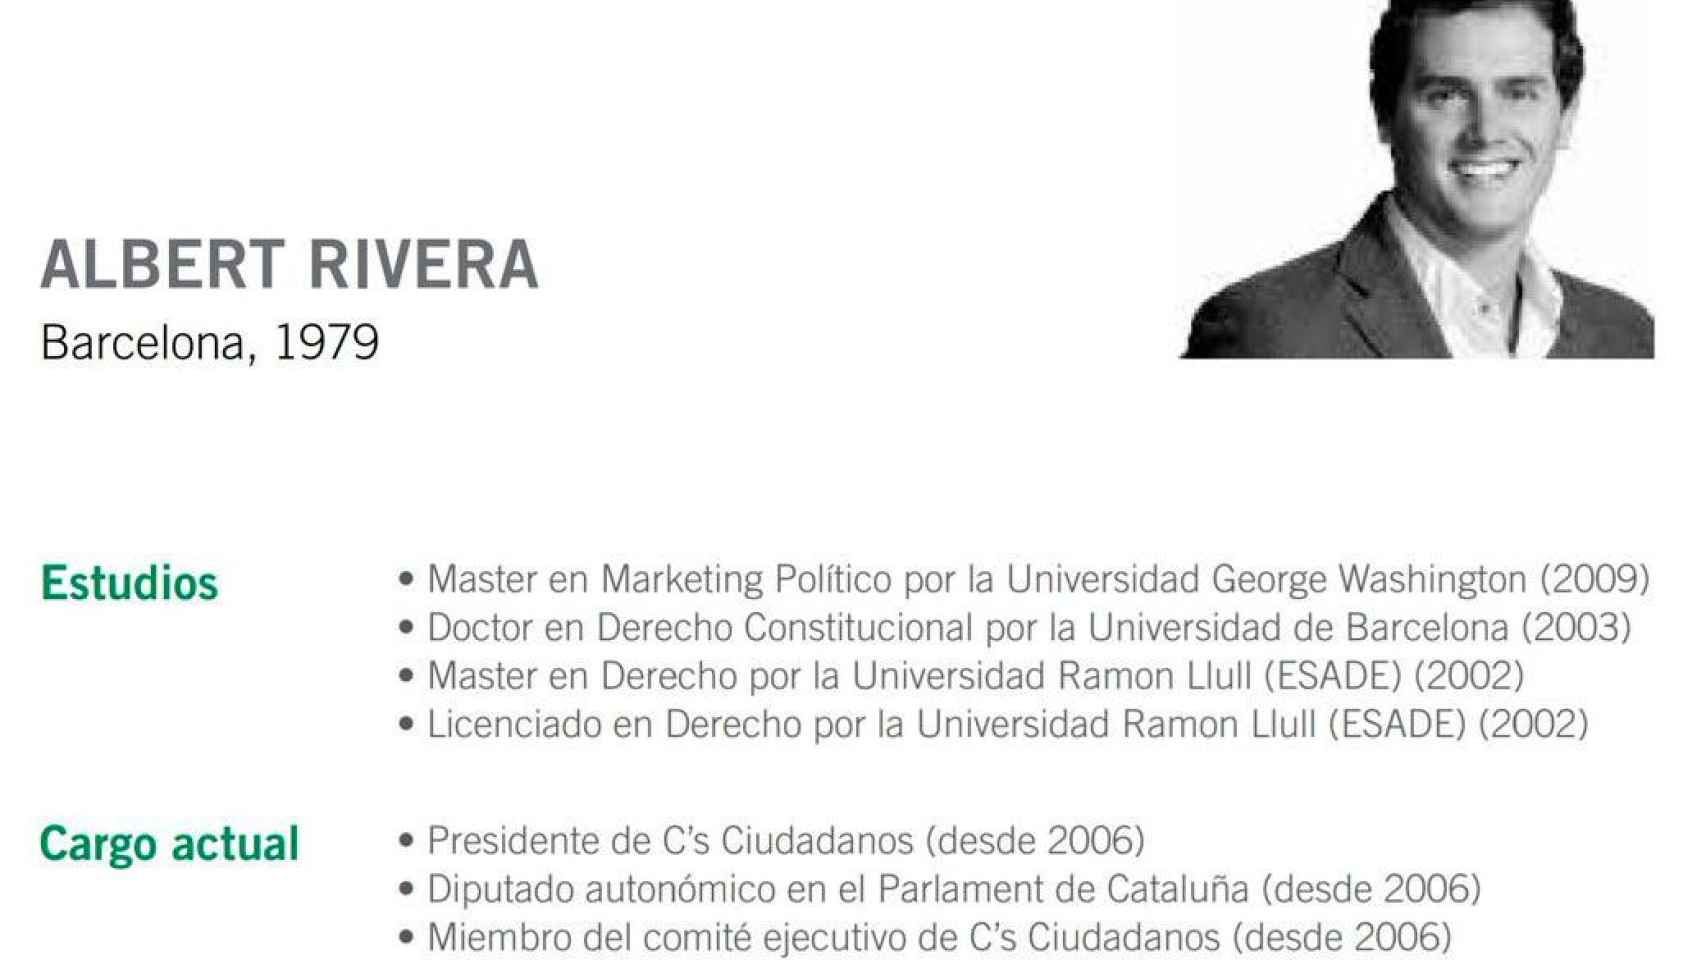 Historial académico de Albert Rivera en la web del Círculo de Economía